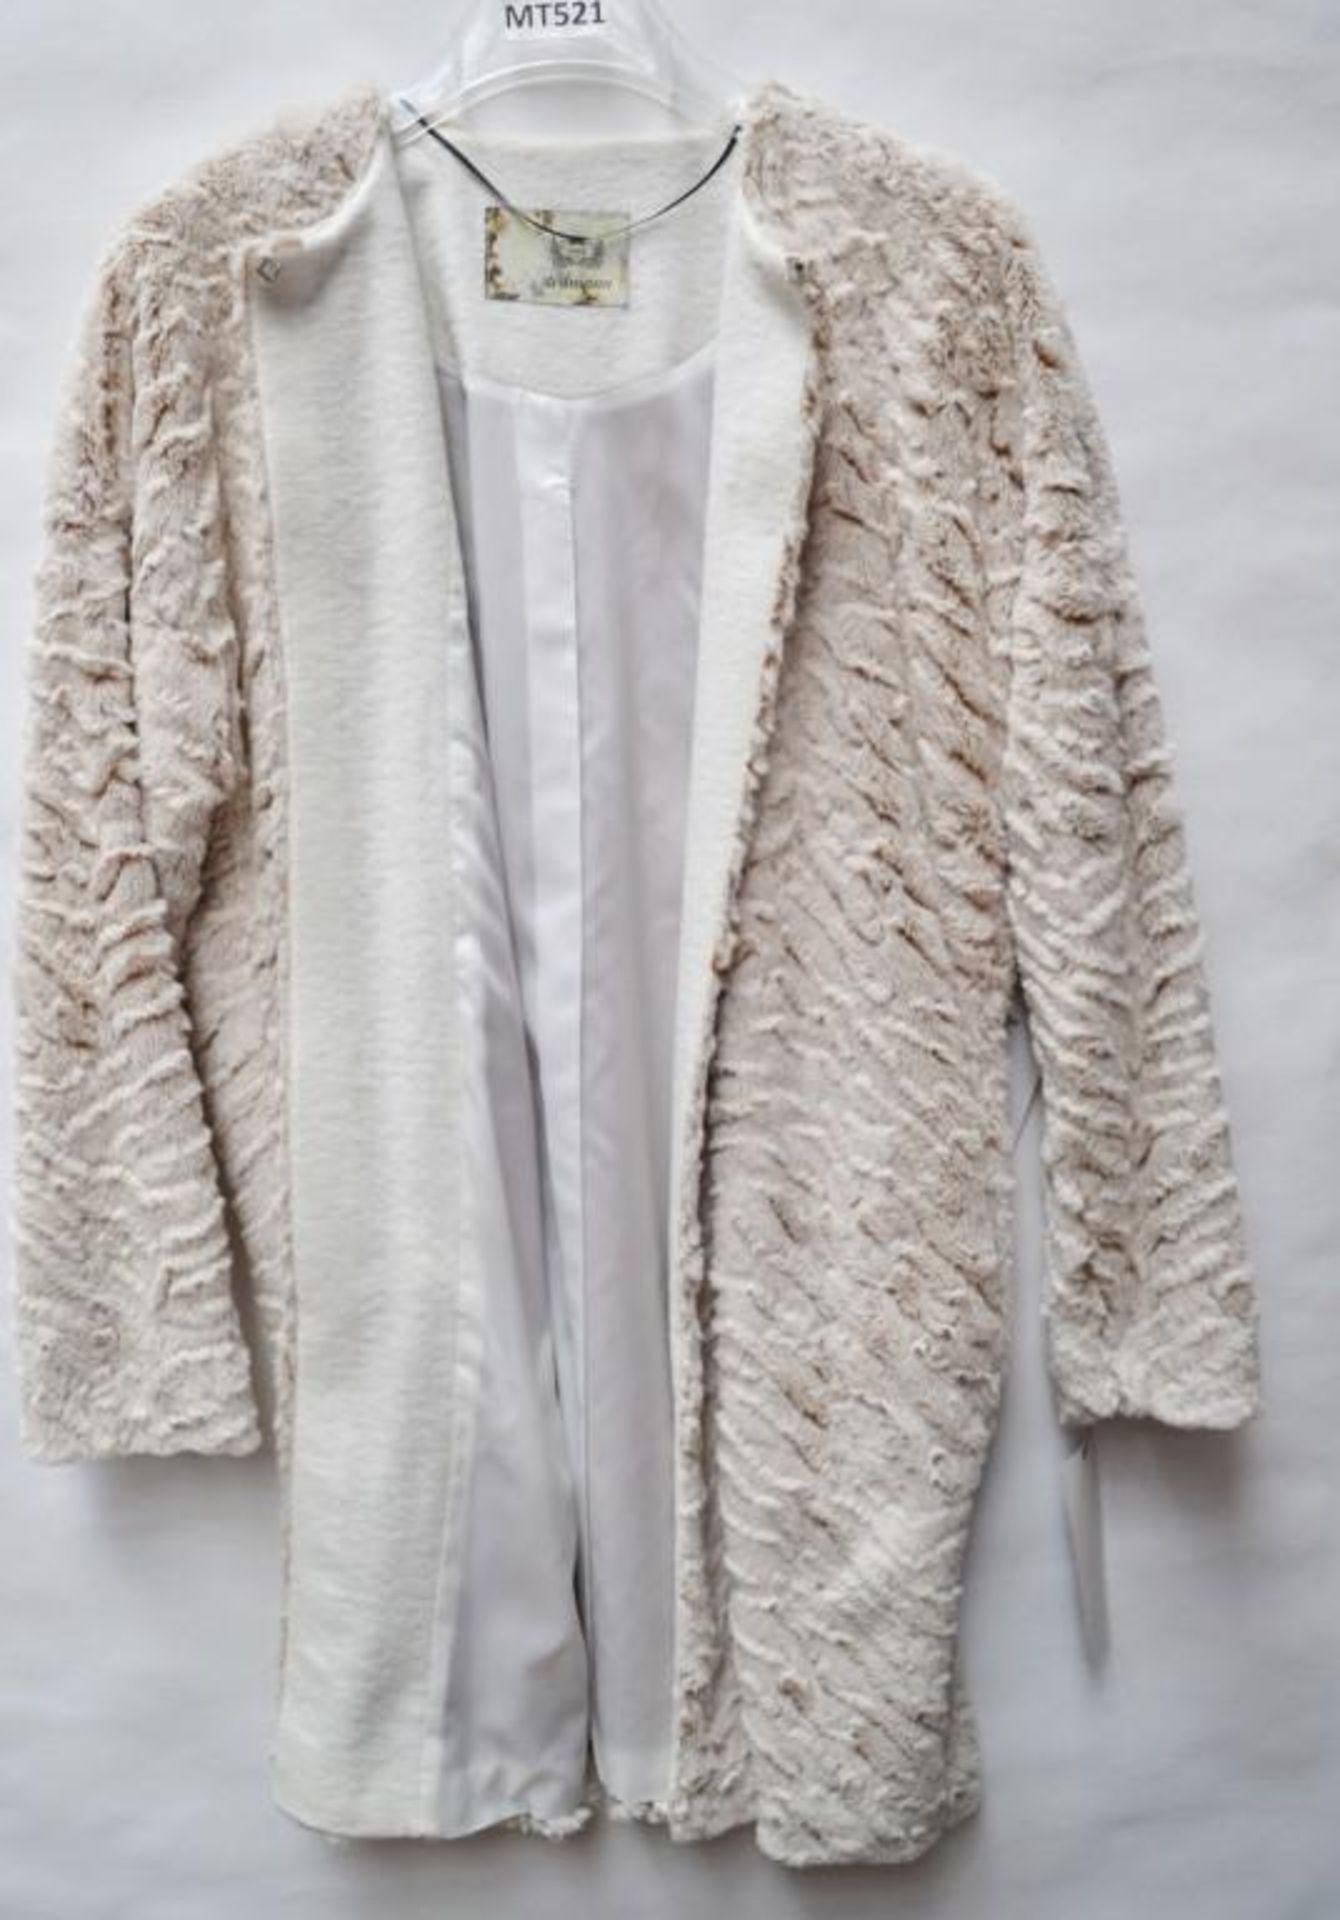 1 x Steilmann Womens Premium Faux Pelt Coat / Cape - Clasp At Neck - UK Size 12 - Colour: Cream / B - Image 3 of 4